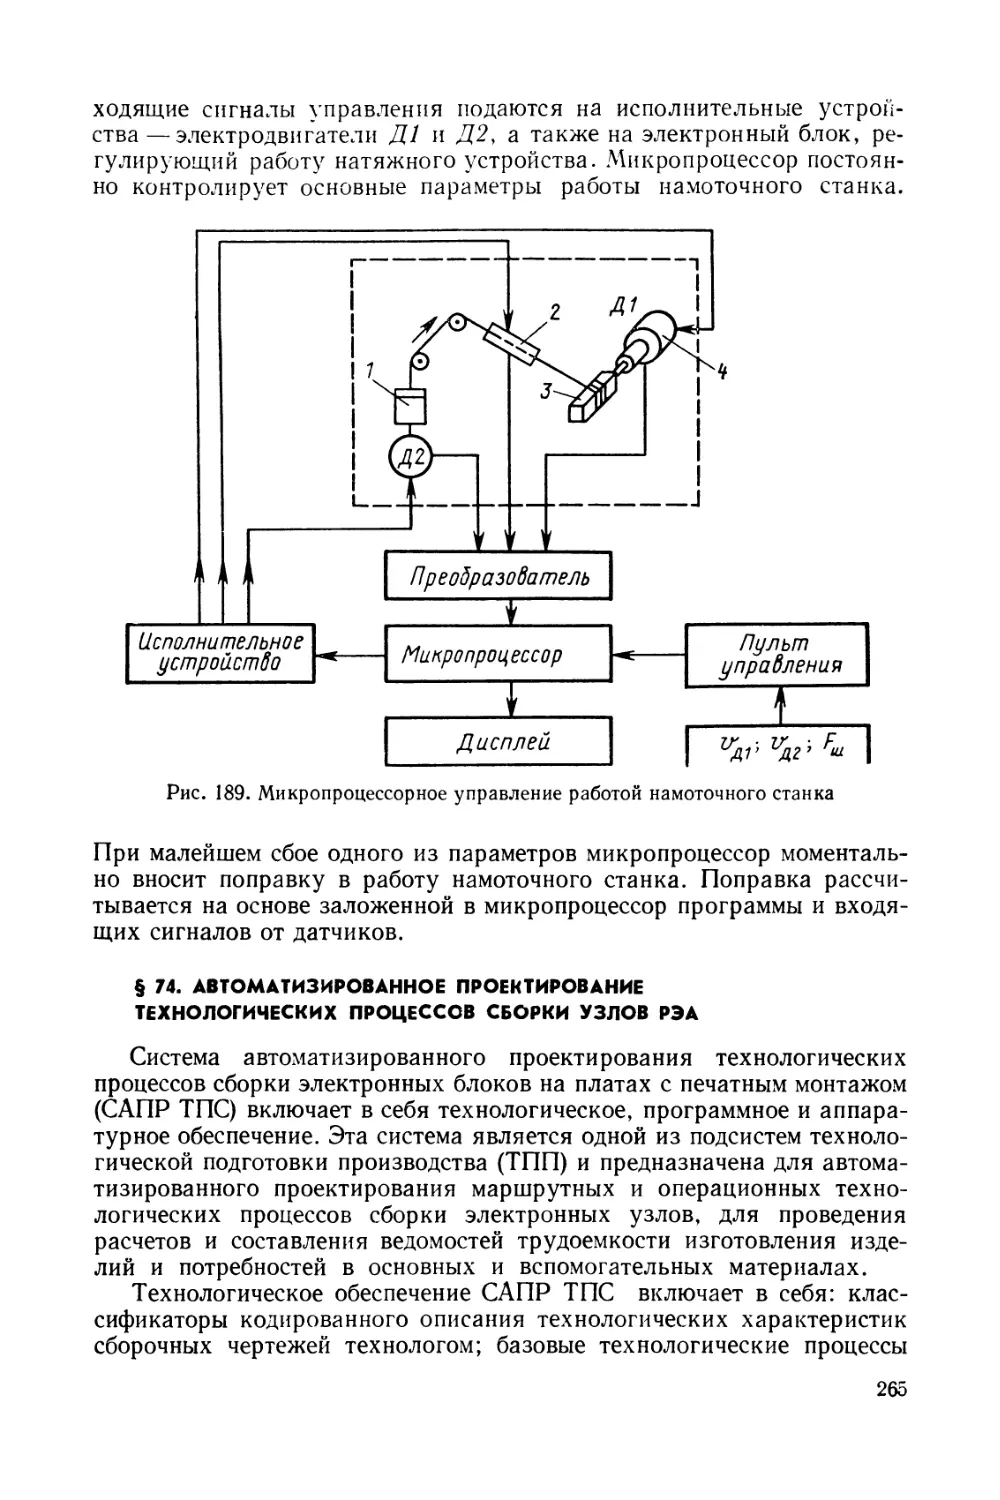 § 74. Автоматизированное проектирование технологических процессов сборки узлов РЭА